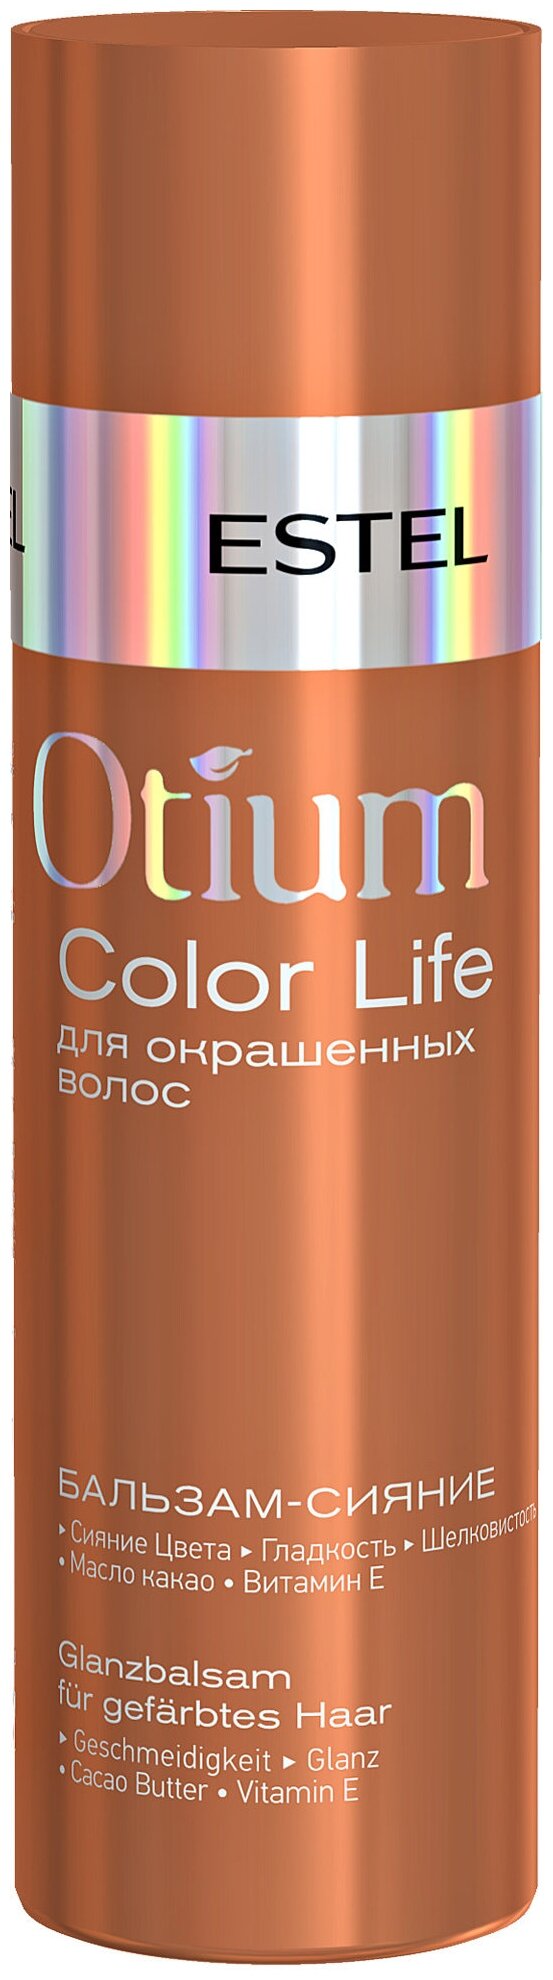 ESTEL бальзам-сияние Otium Color Life для окрашенных волос, 200 мл, 200 г